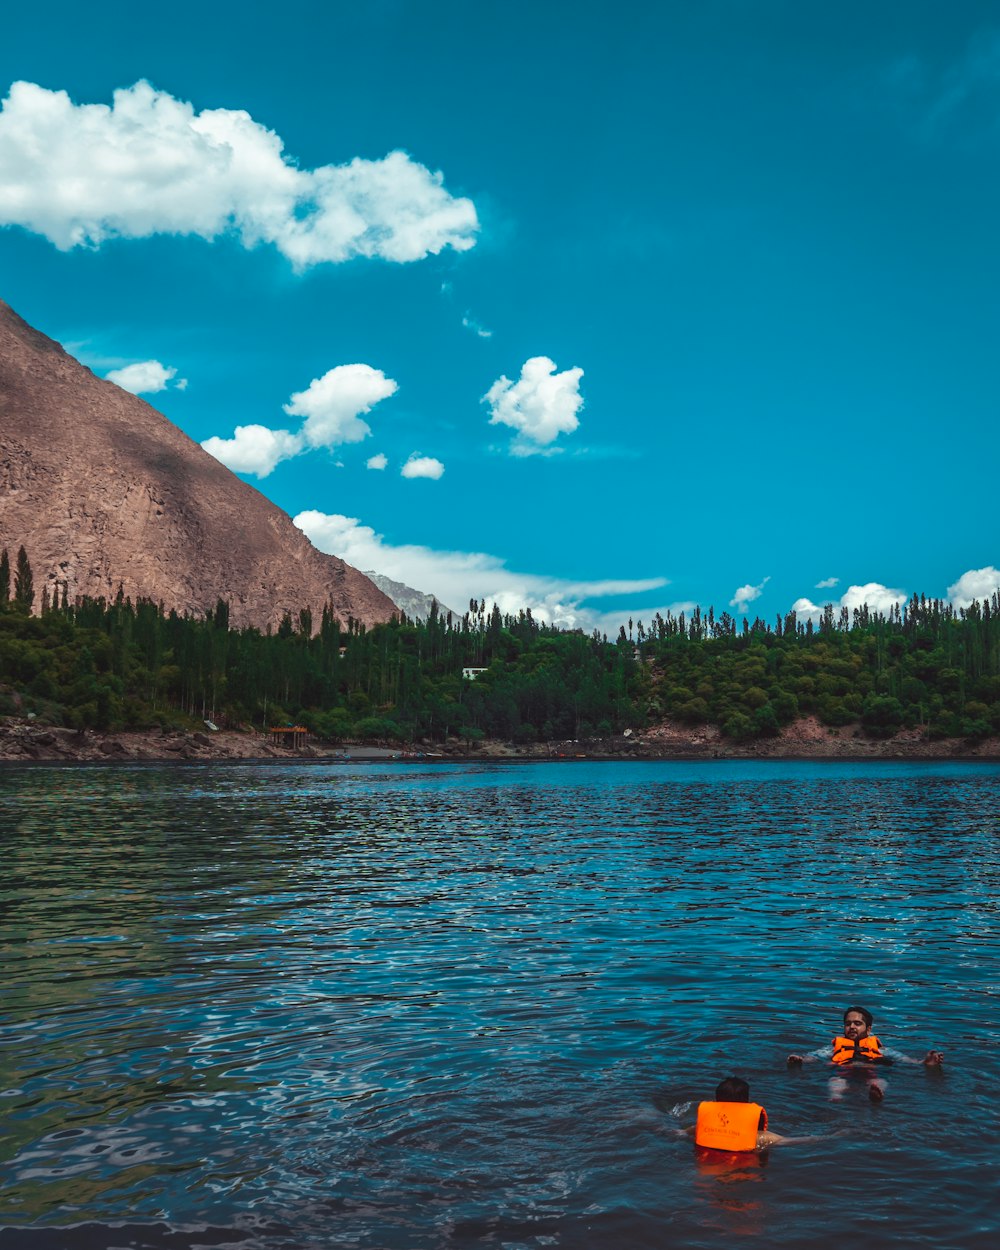 pessoas que andam de caiaque no lago perto da montanha sob o céu azul durante o dia